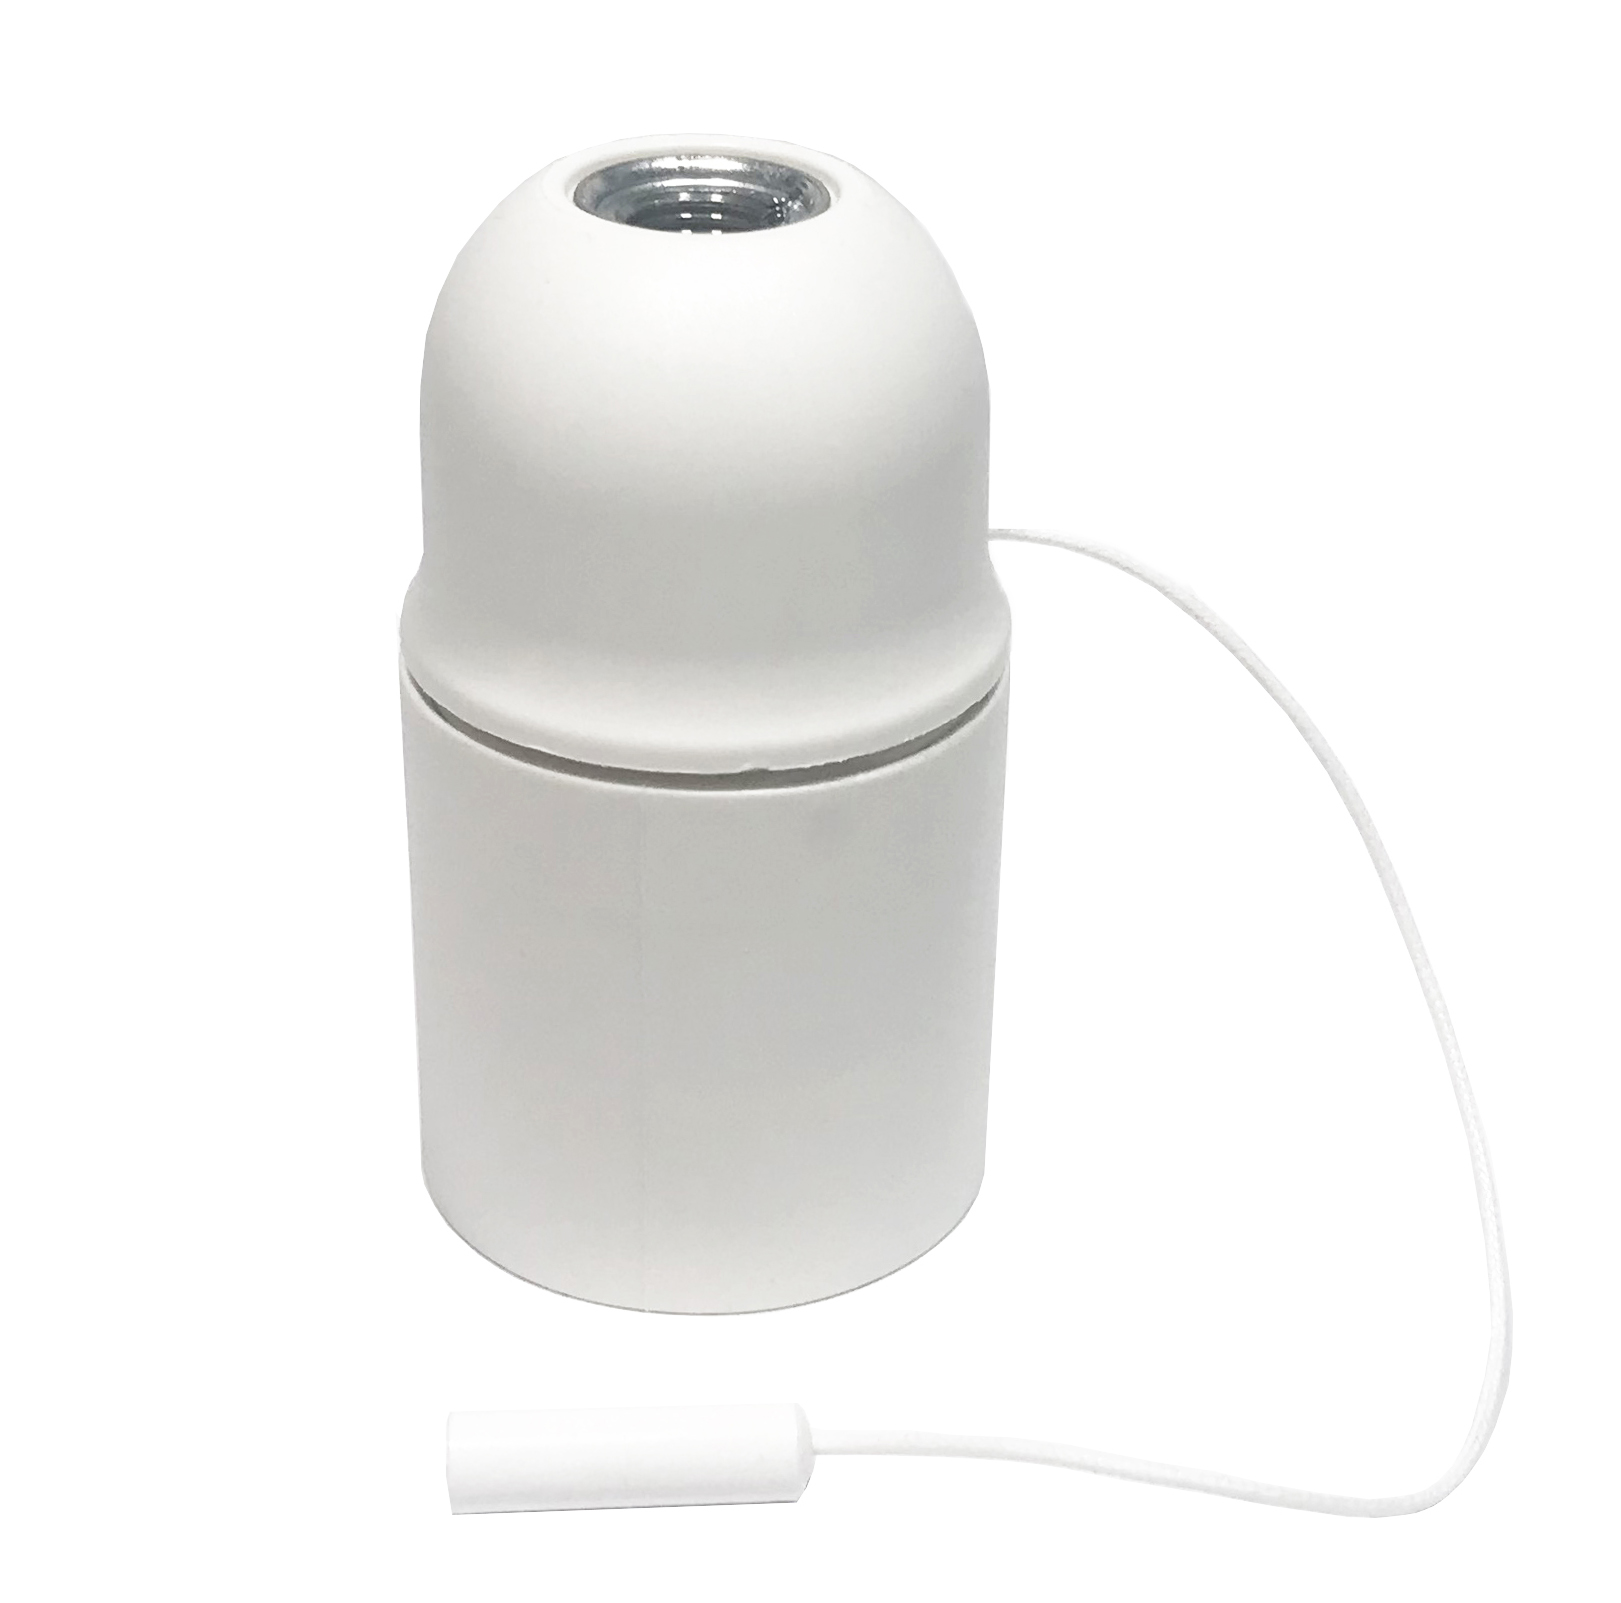 Accesorios para crear tu propia lámpara: los casquillos y portalámparas de termoplástico